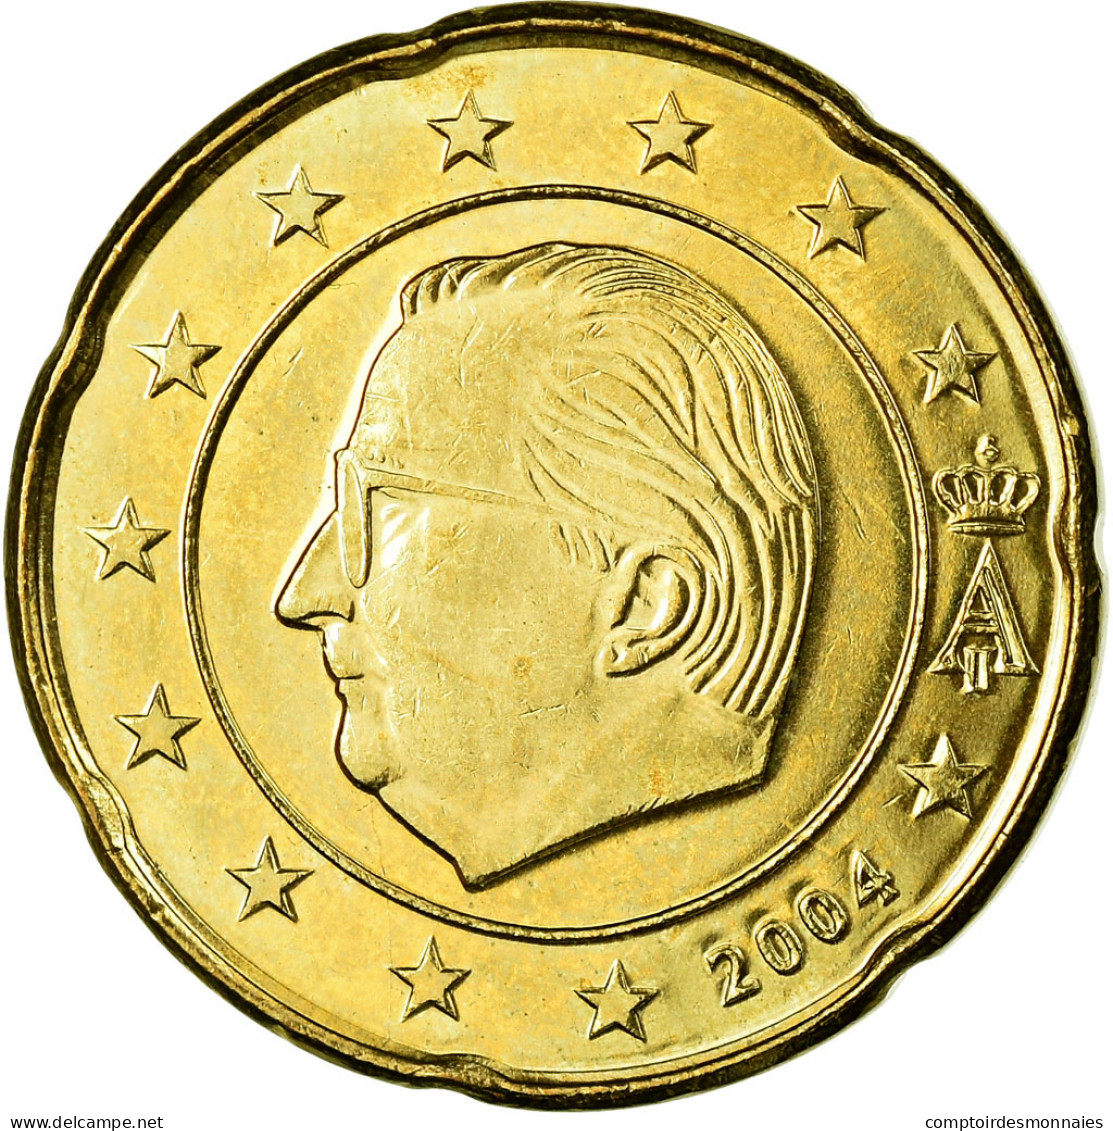 Belgique, 20 Euro Cent, 2004, SUP, Laiton, KM:228 - België